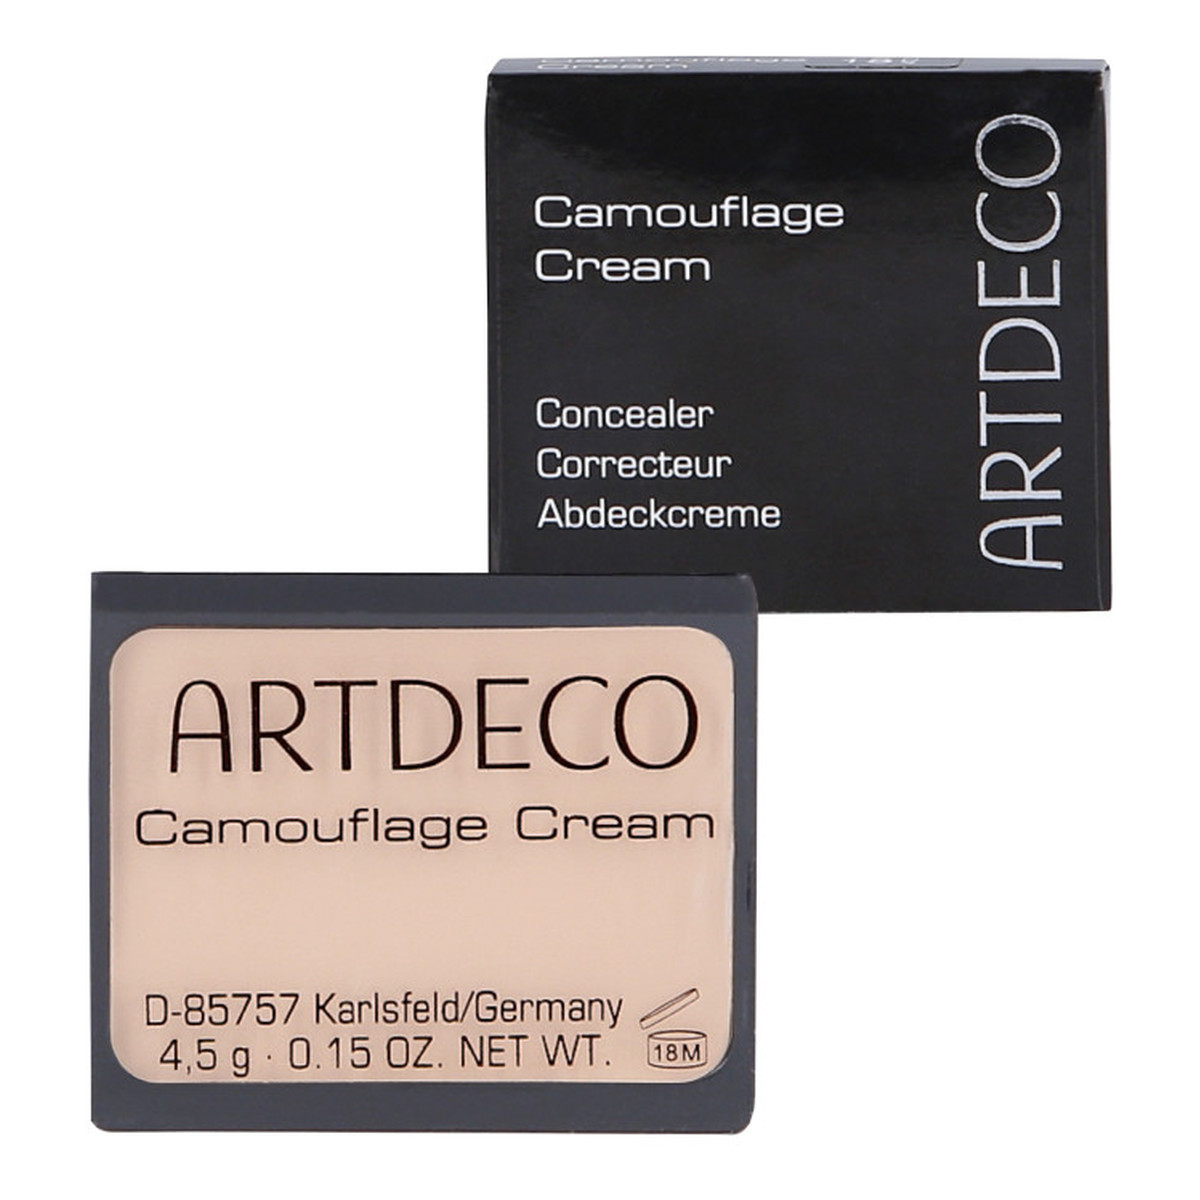 ArtDeco Camouflage Cream Korektor - Kamuflaż Kremowy 4g